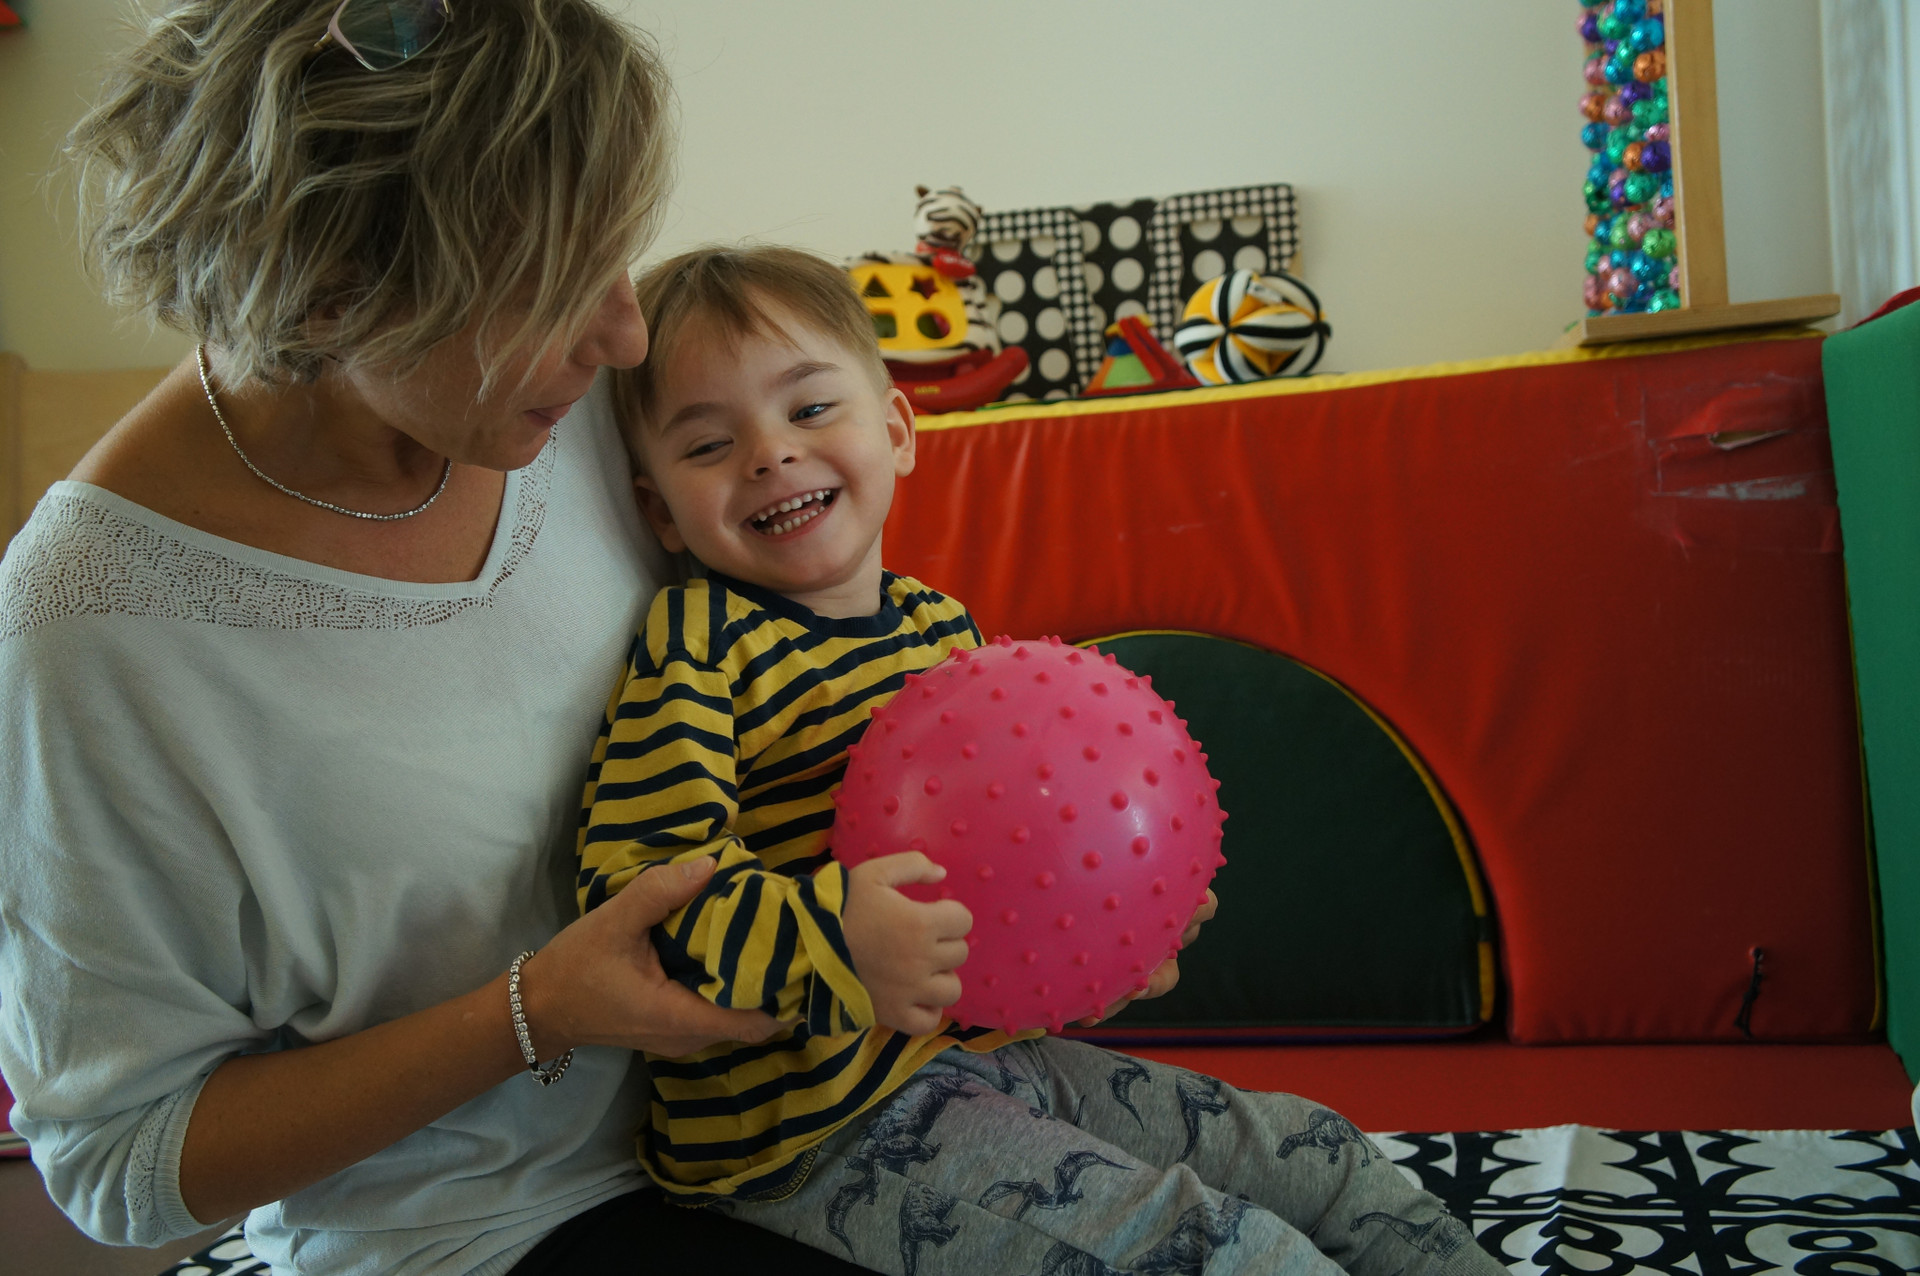 Il piccolo Edoardo, ospite del Centro Diagnostico, è in braccio all'educatrice e ride stringendo una palla di gomma rosa